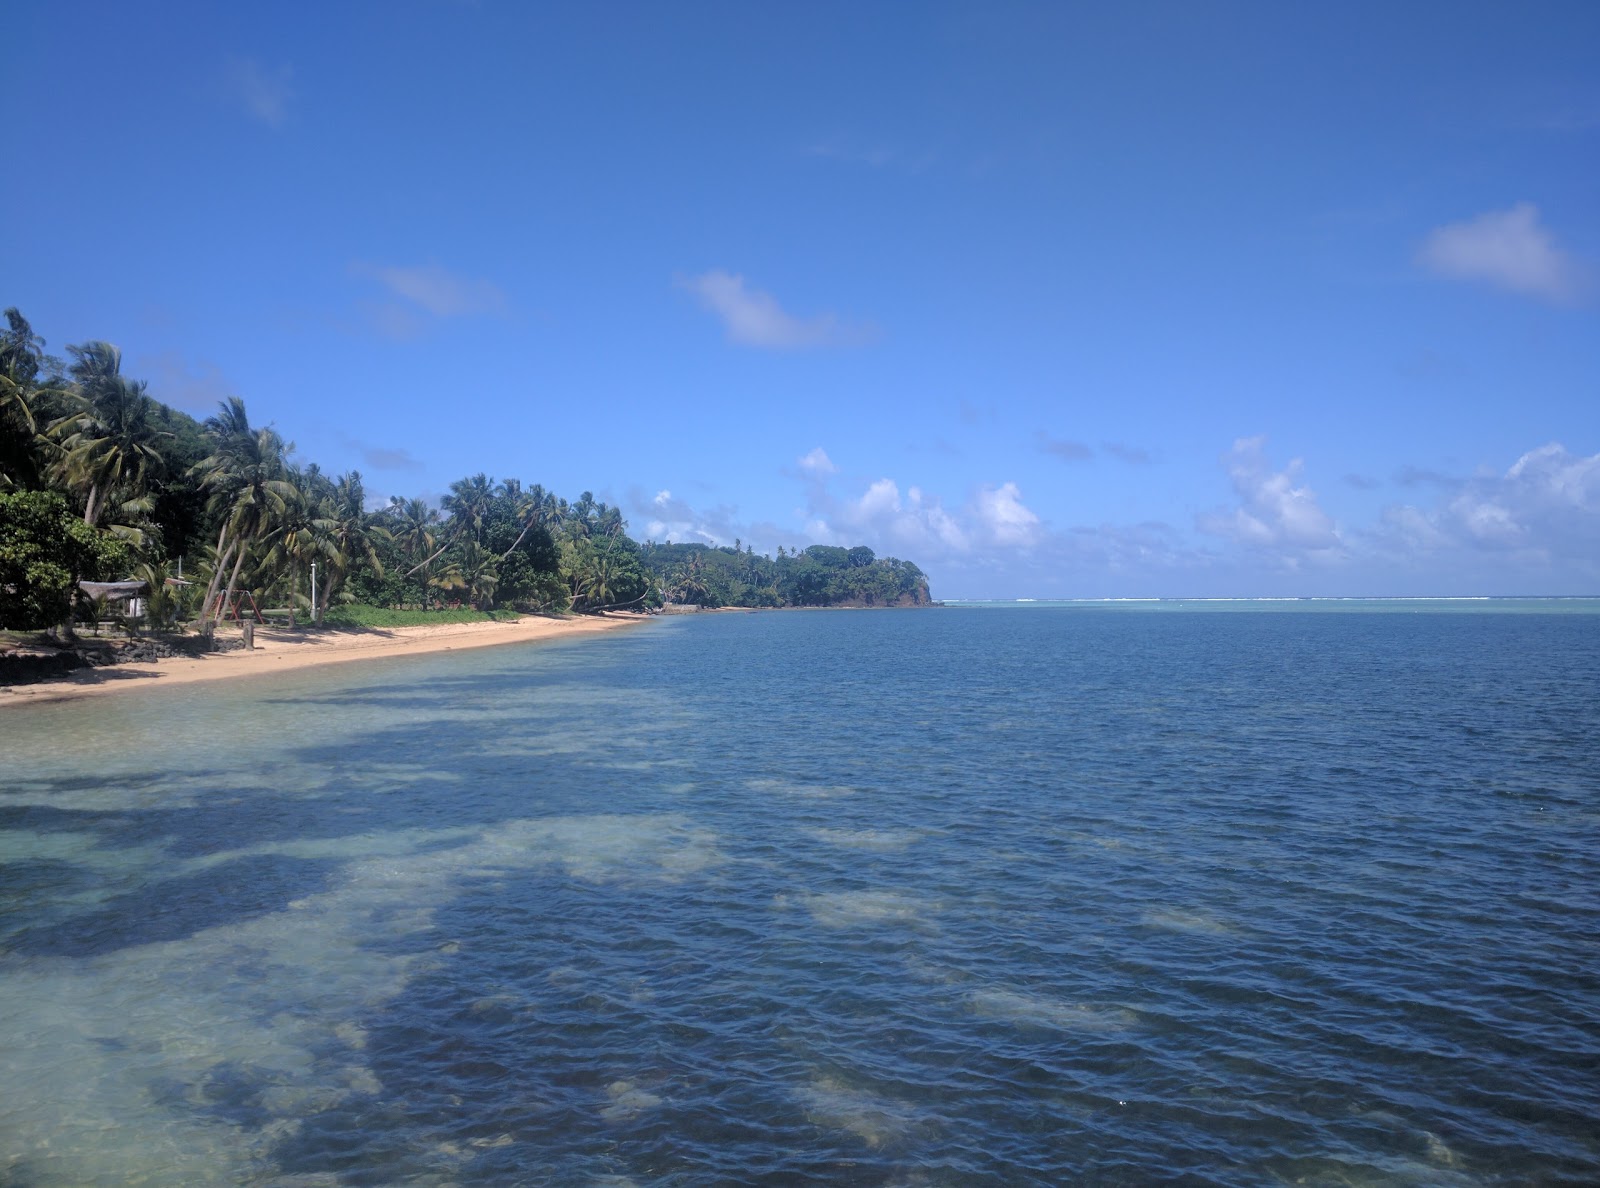 Palau East Beach'in fotoğrafı parlak kum yüzey ile